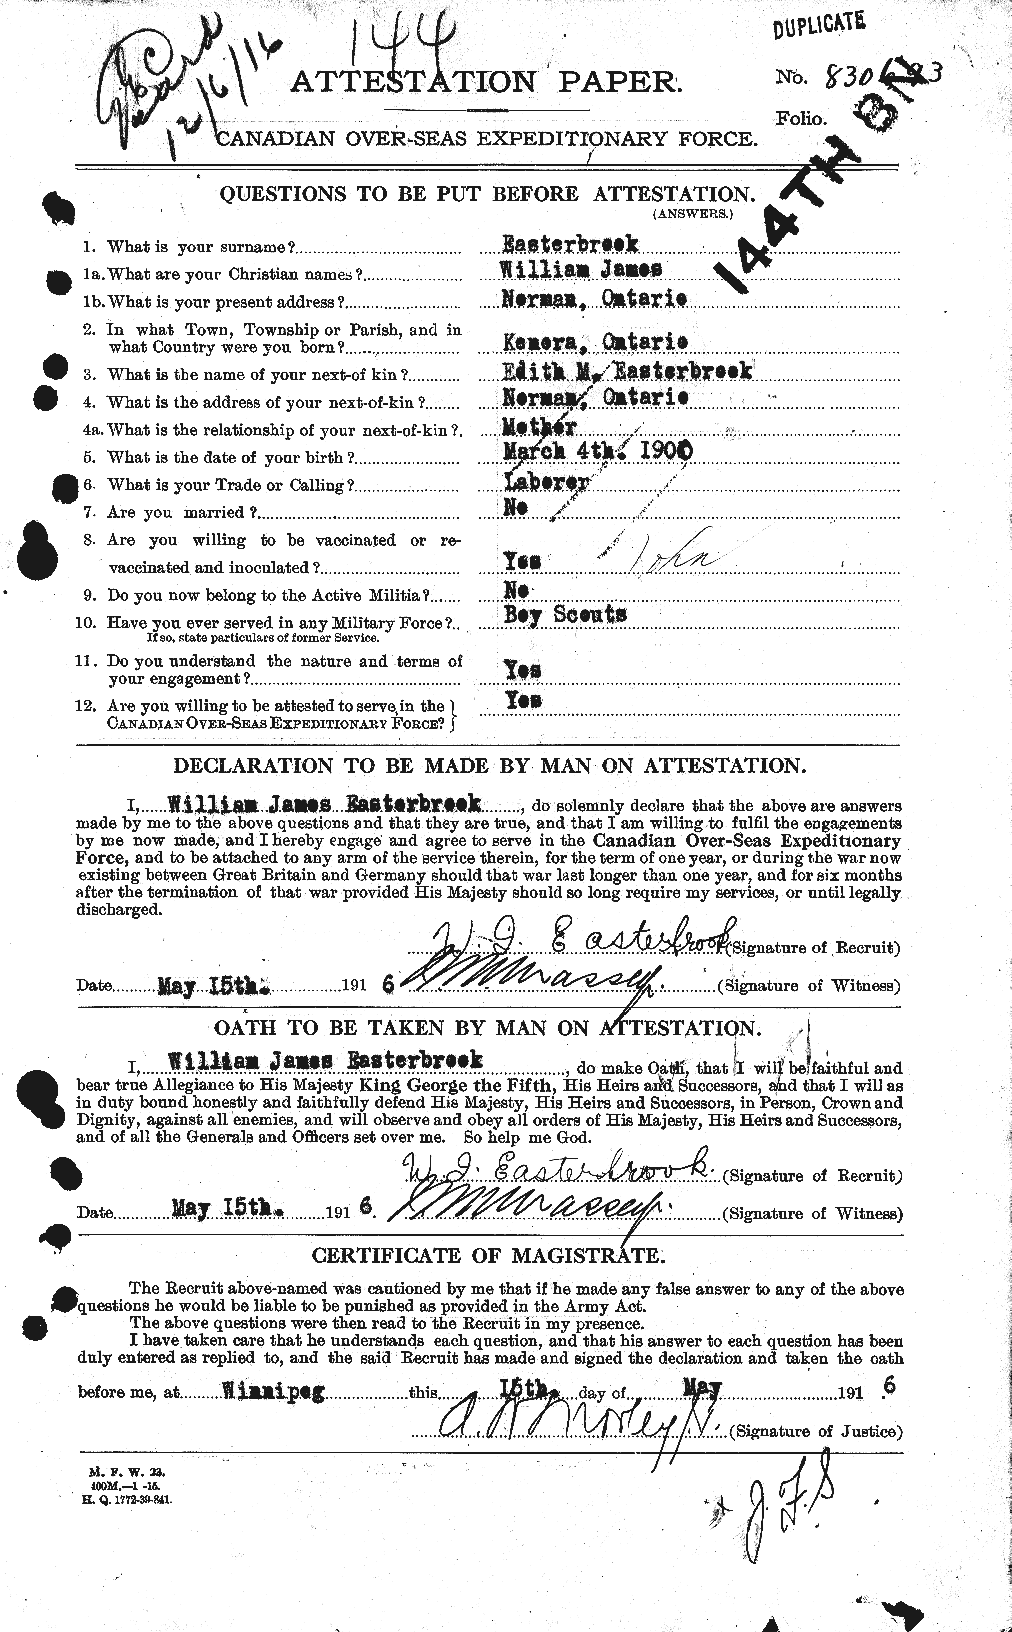 Dossiers du Personnel de la Première Guerre mondiale - CEC 307726a